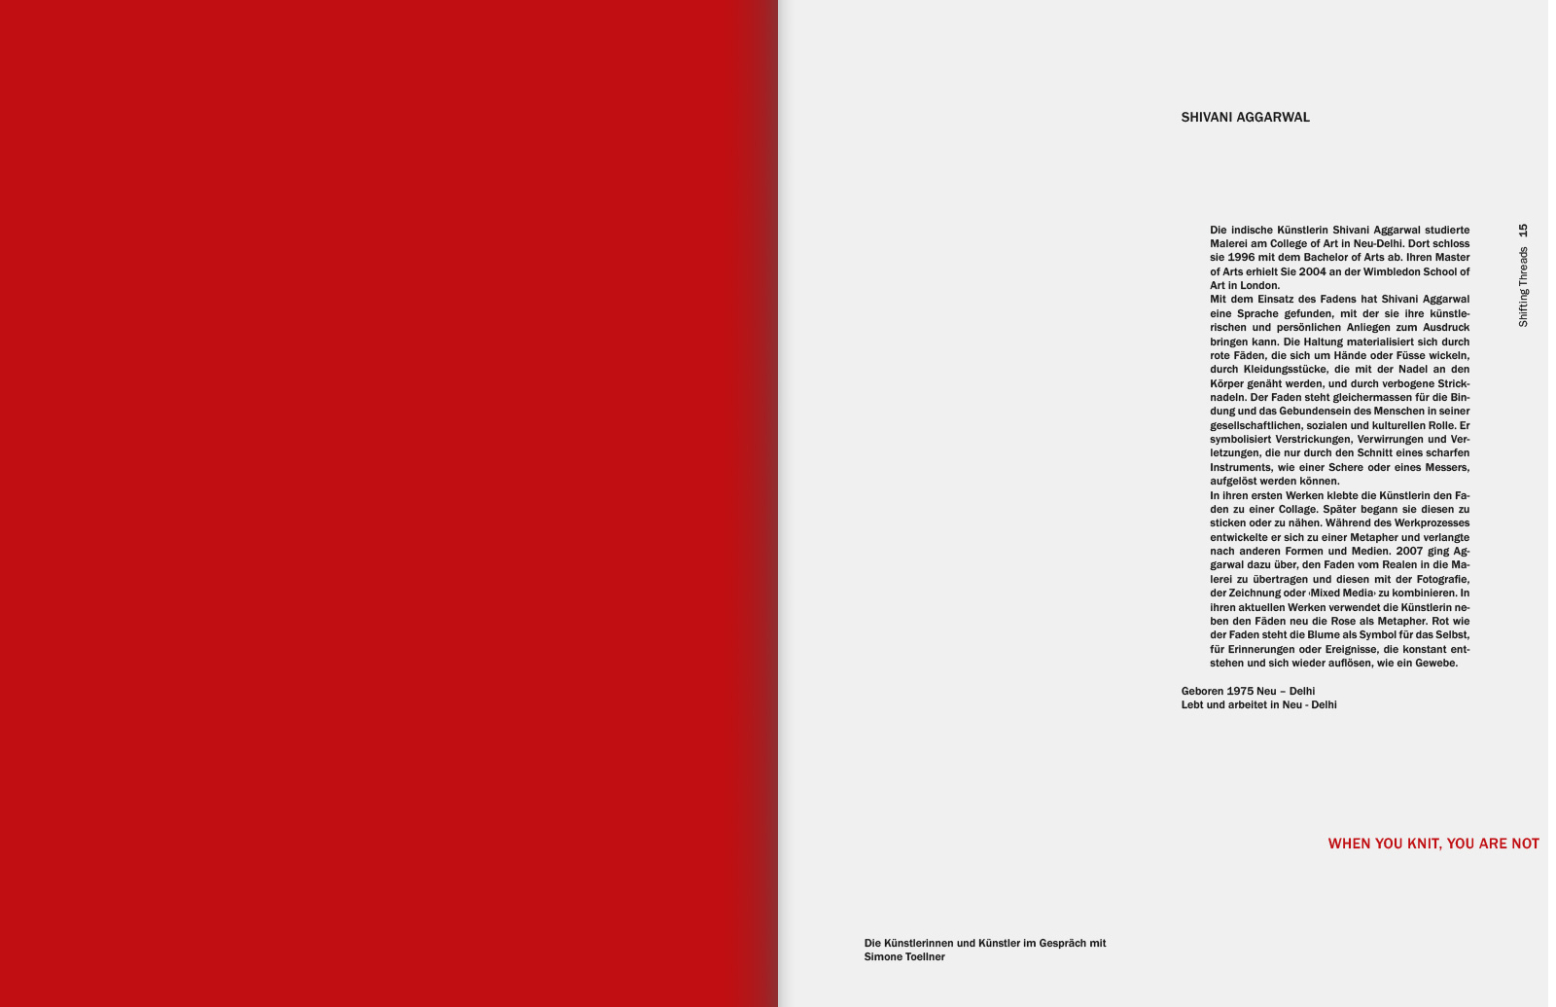 Varga Mihály, Mihaly Varga, Varga, Mihaly, Mihály Varga, Katalog, Broschüre, Heft, Editorial, Editorial Design